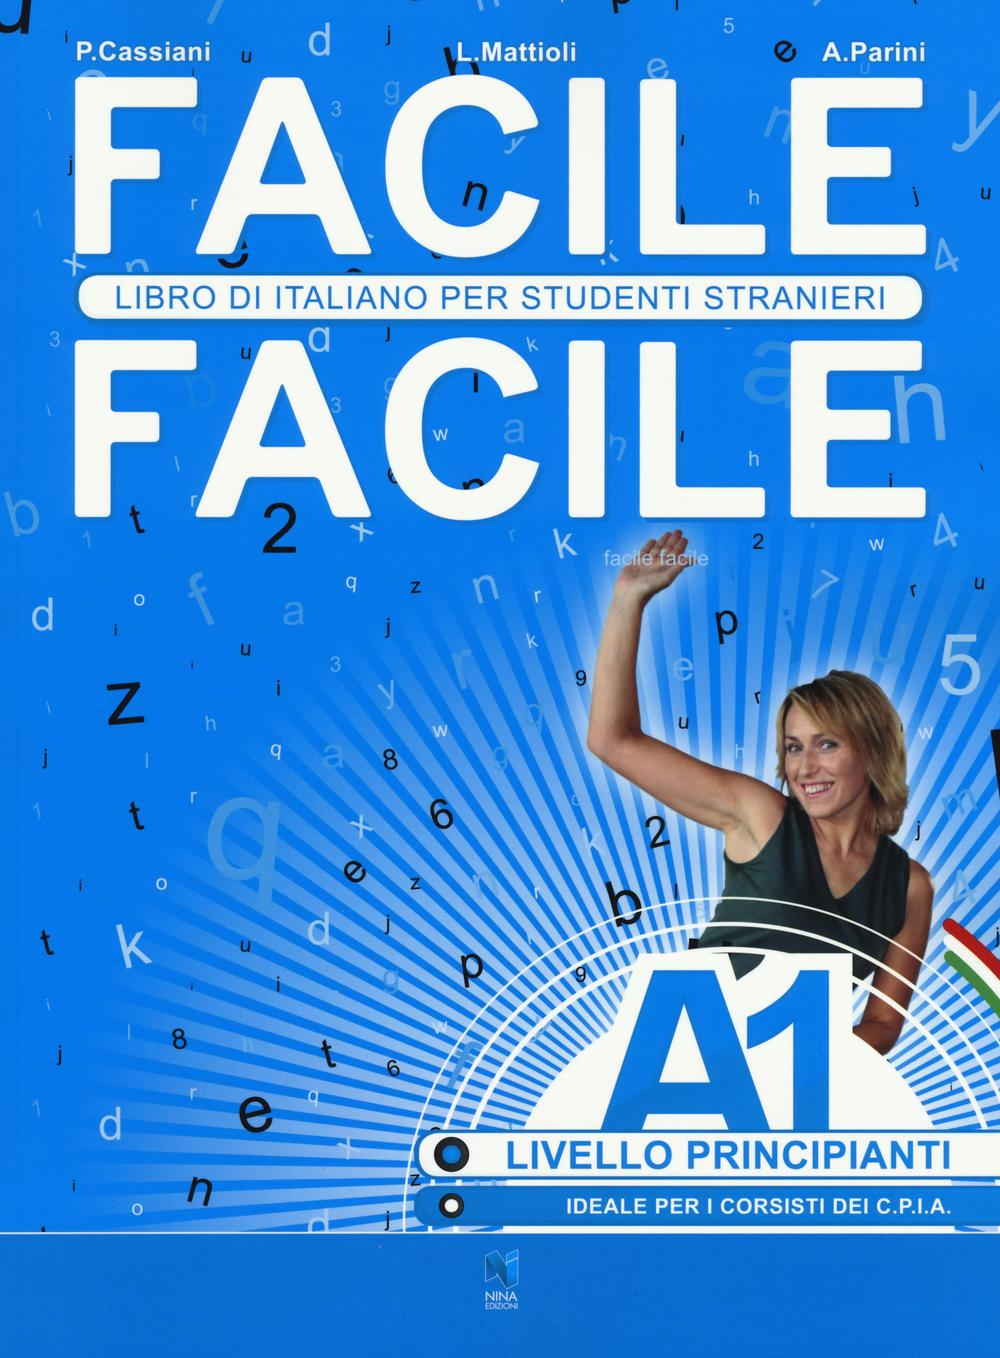 Image of Facile facile. Libro di italiano per studenti stranieri. A1 livello principianti